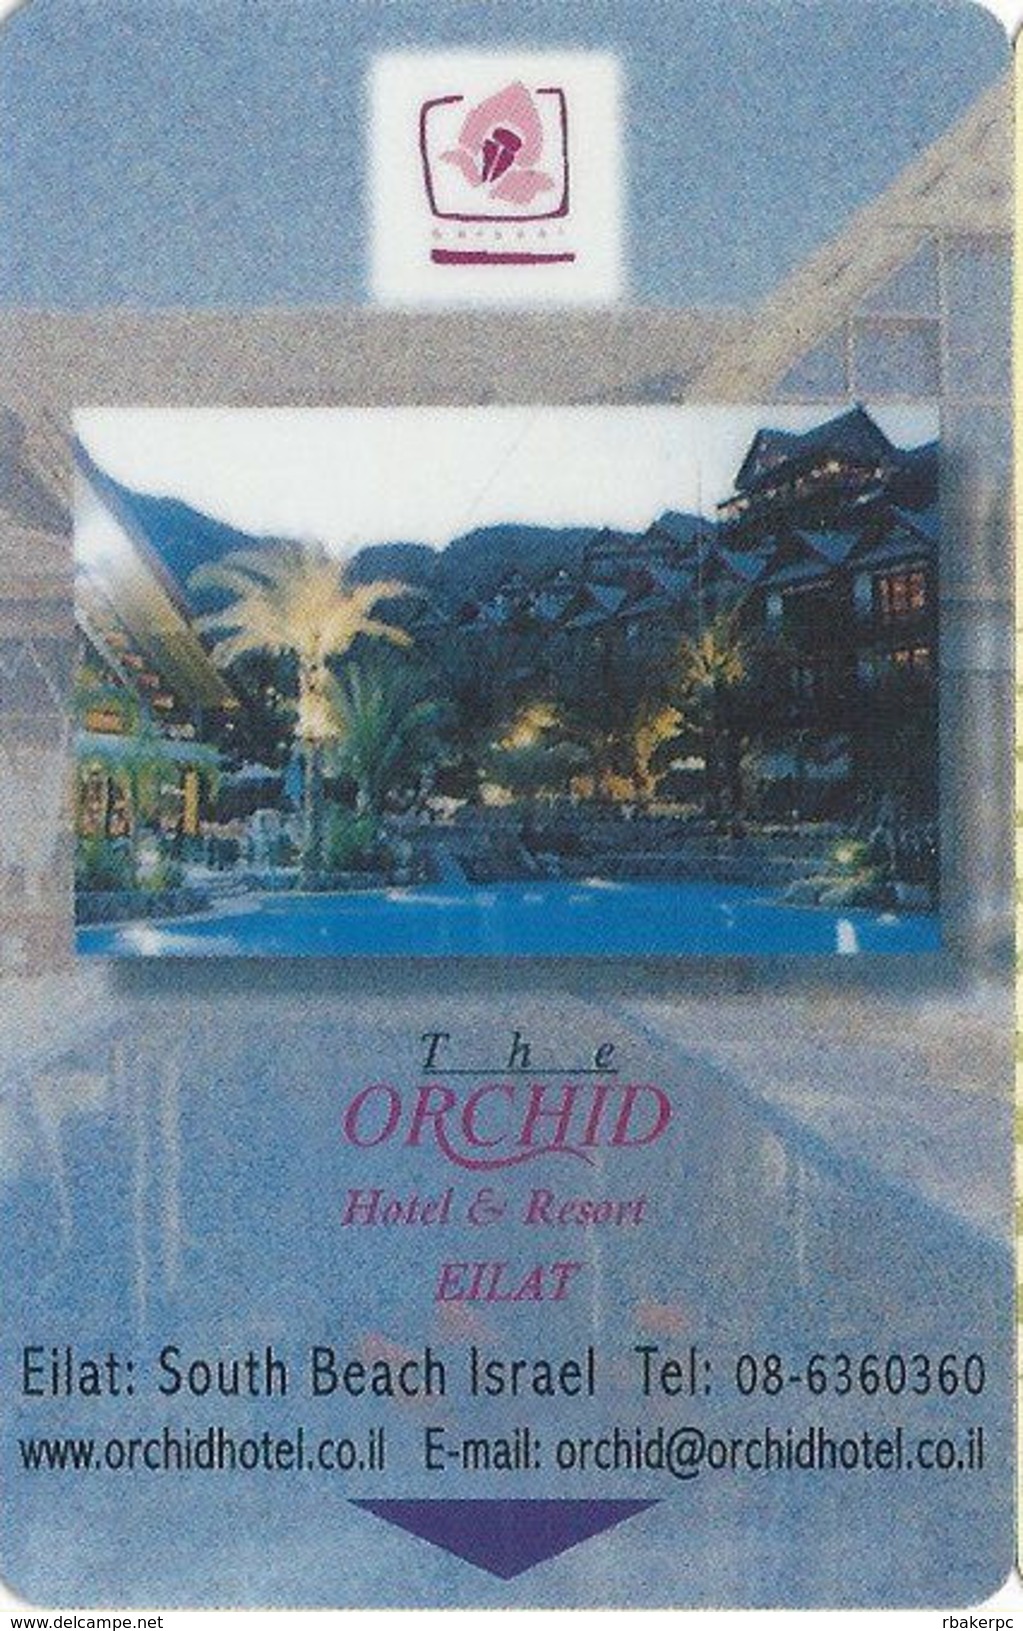 The Orchid Hotel Eilat, South Beach Israel - Hotel Room Key Card - Hotel Keycards